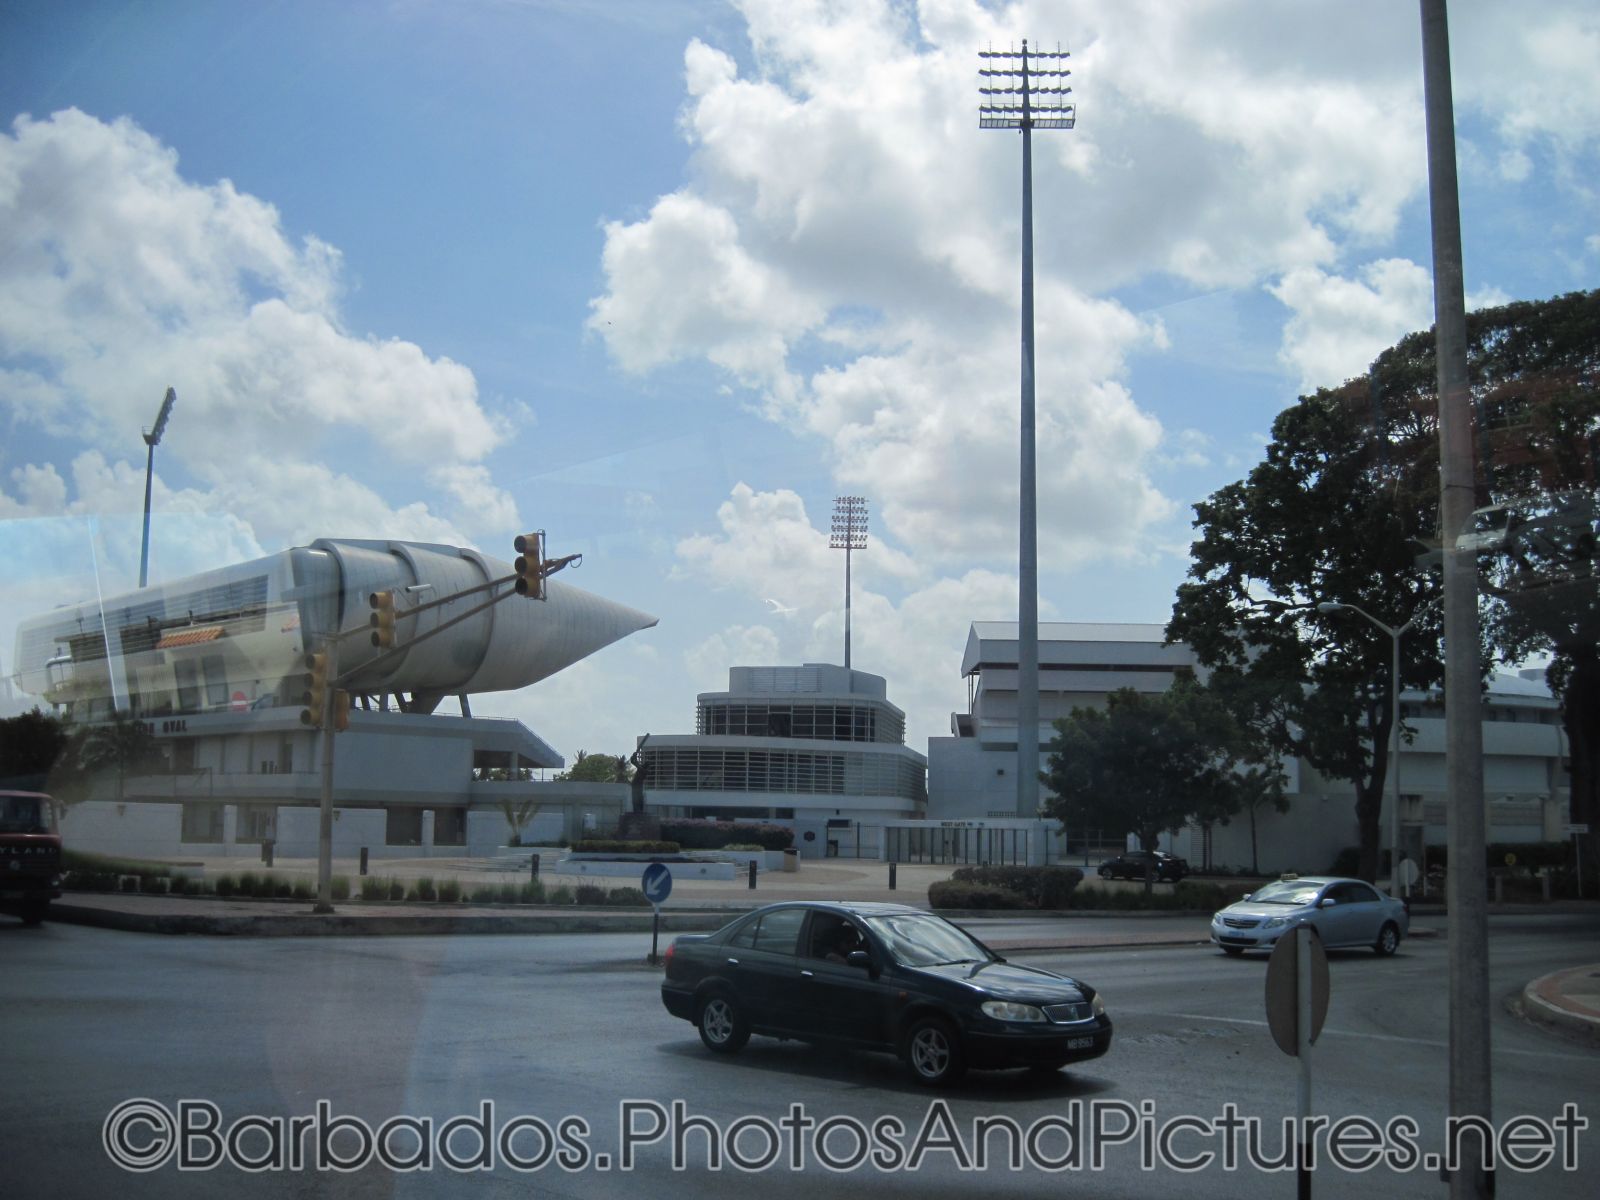 Kensington Oval in Bridgetown Barbados (2).jpg
